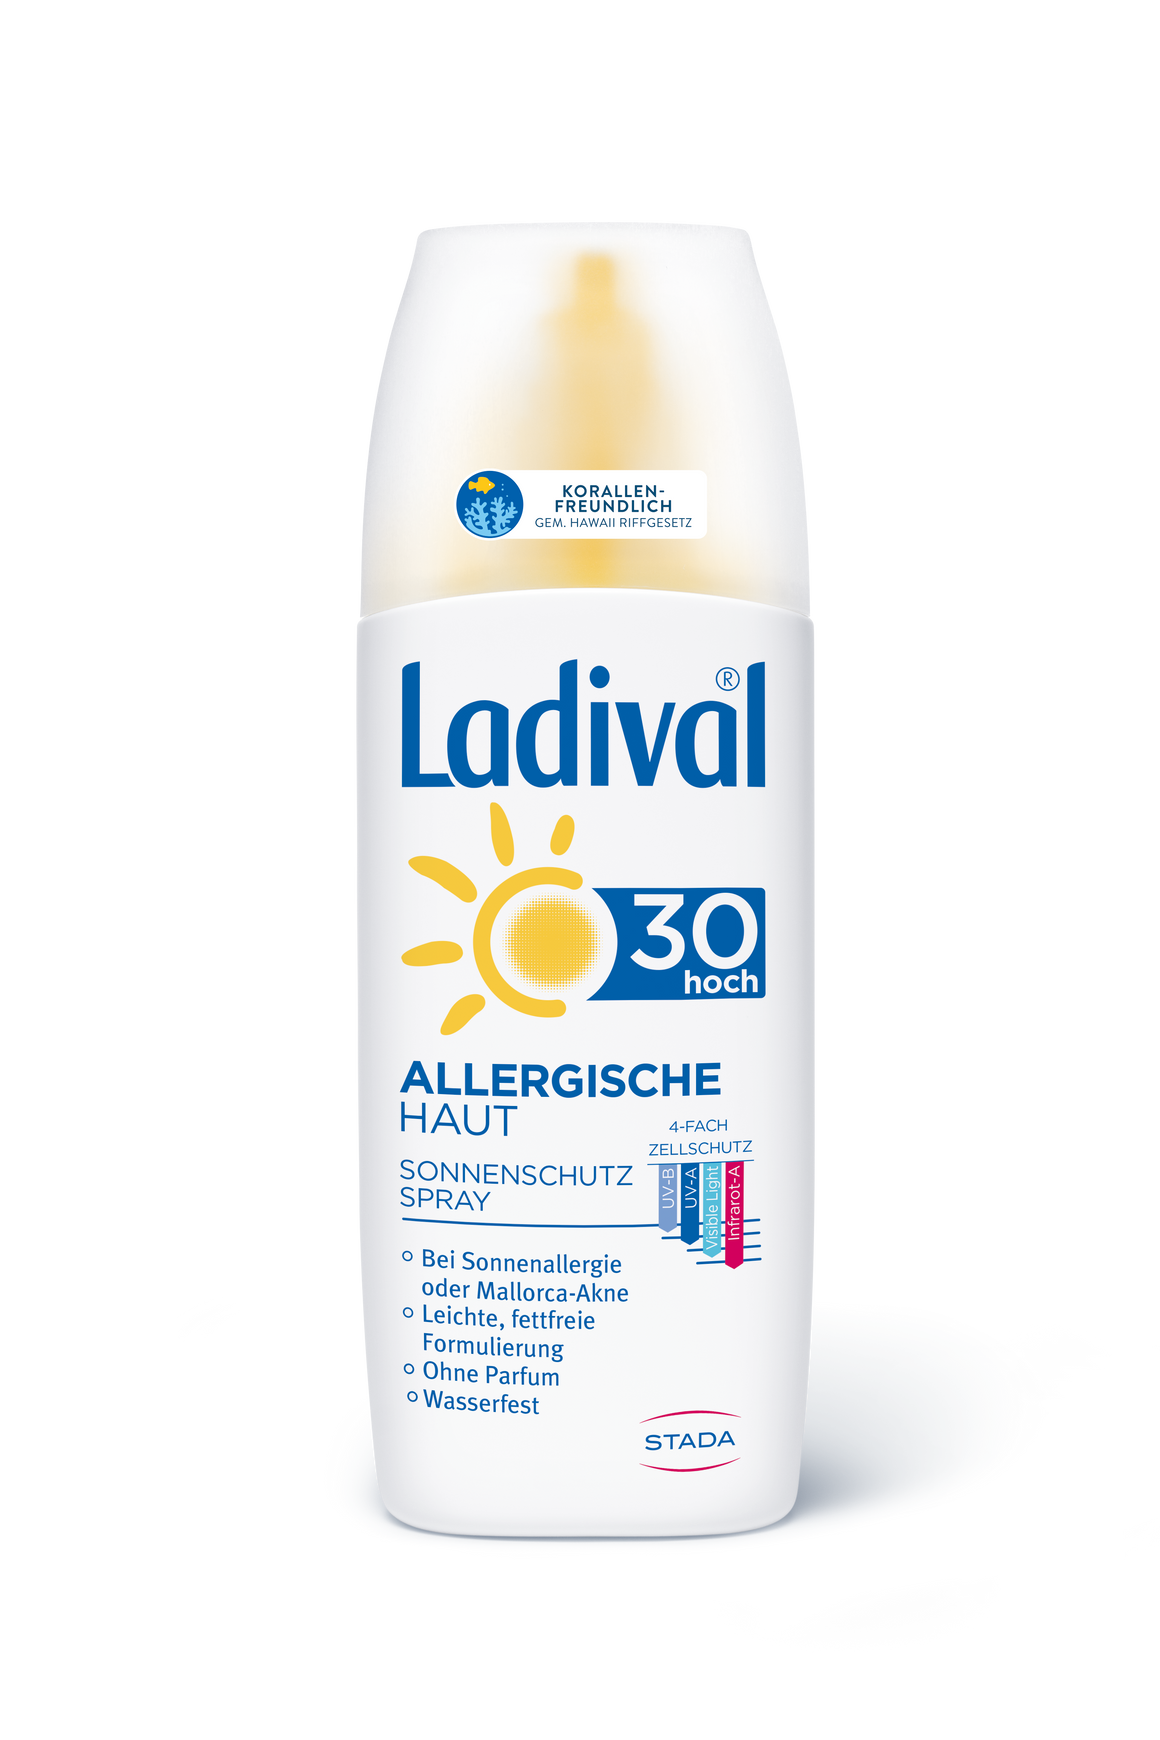 Ladival Allergische Haut Sonnenschutz Spray F30 150ml